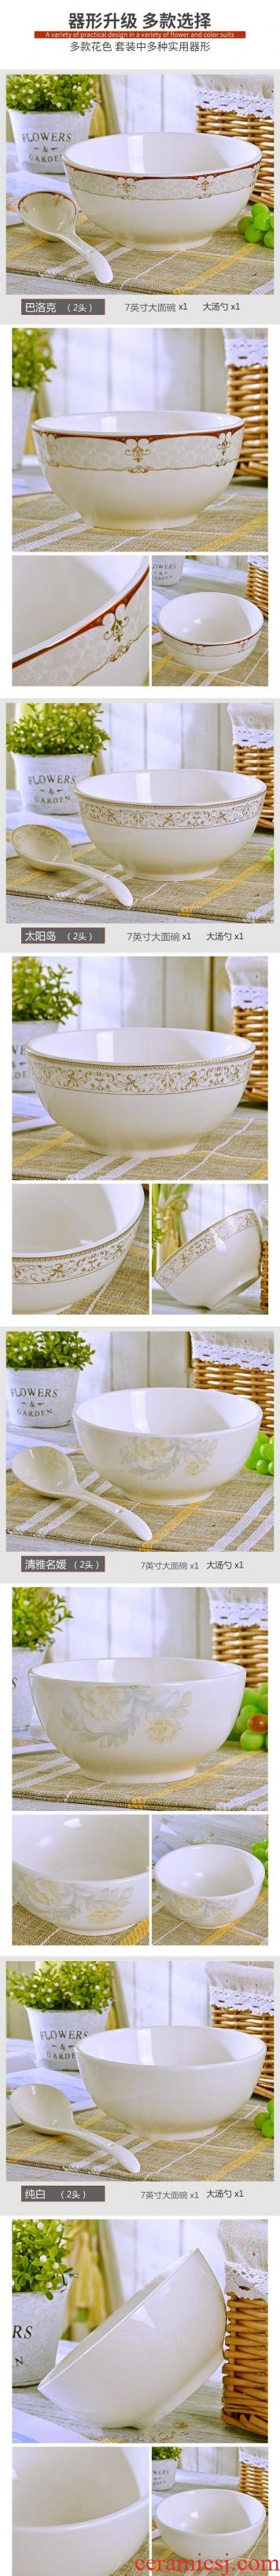 Jingdezhen 7 "rainbow noodle bowl ceramic bowl suit large rice bowls tablespoon salad bowl creative large soup bowl